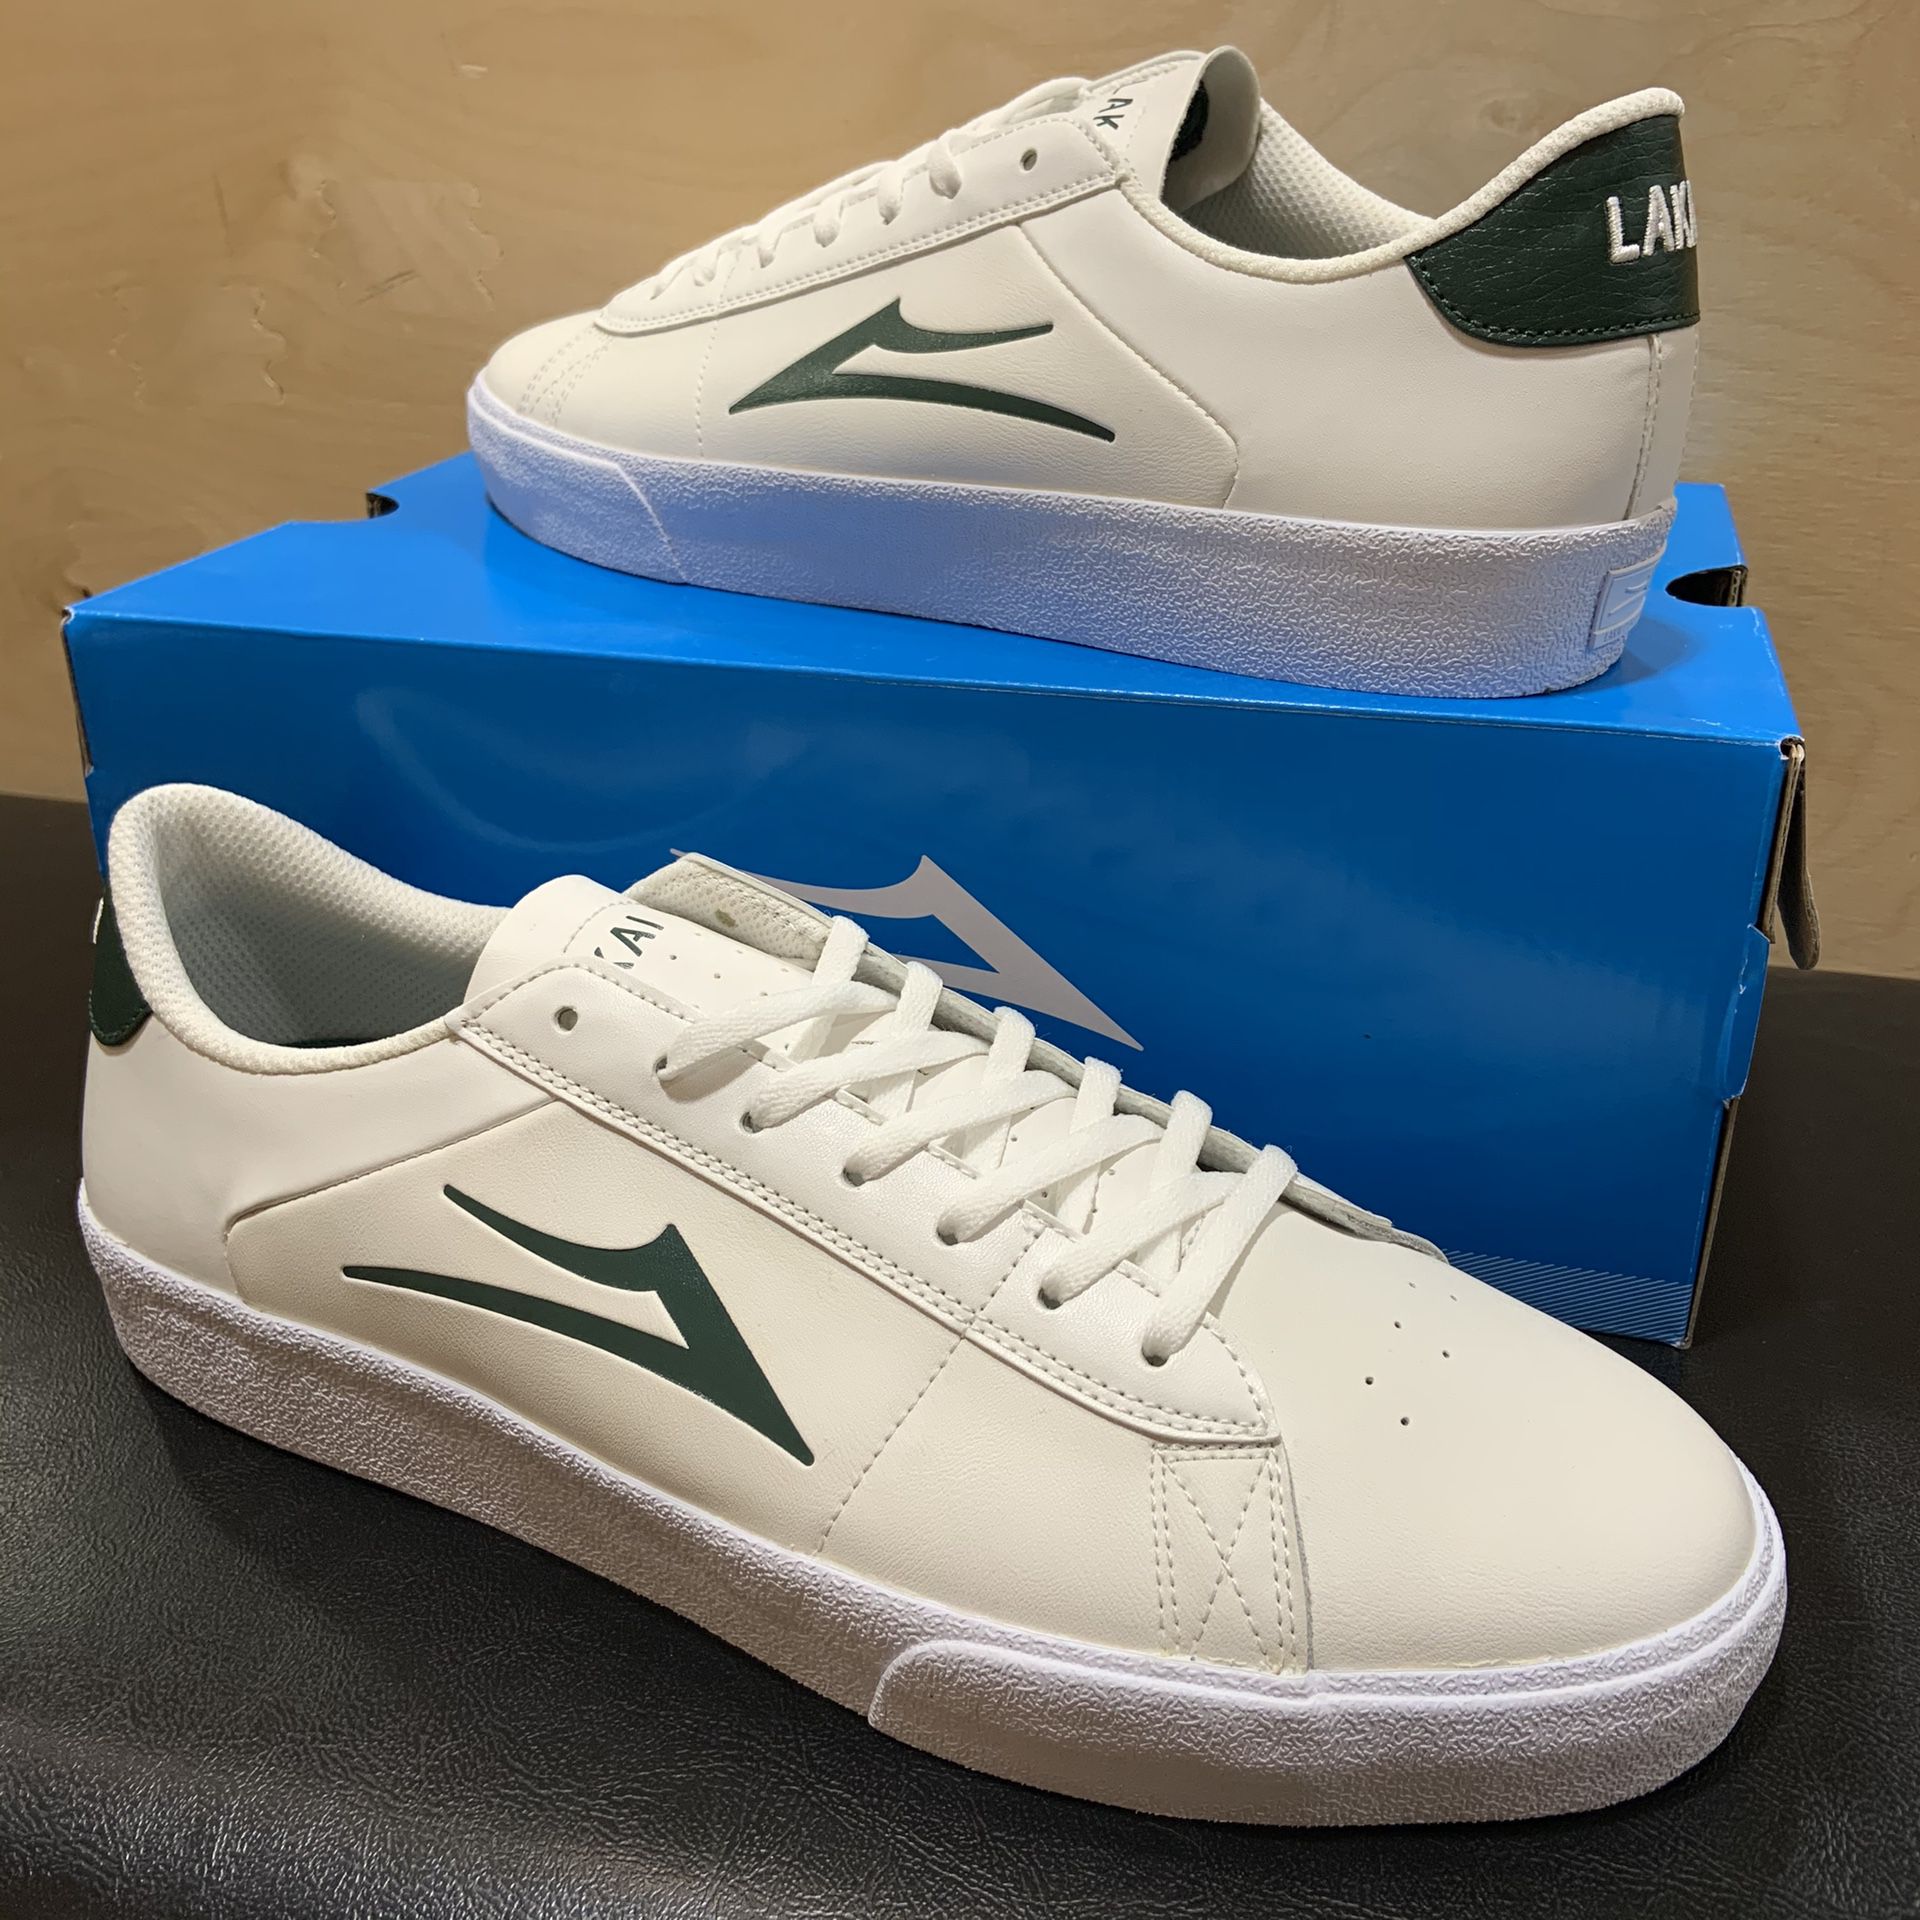 Lakai Newport White/Green Leather Brand New Sizes 5, 6, 8, or 11.5 skate skateboarding